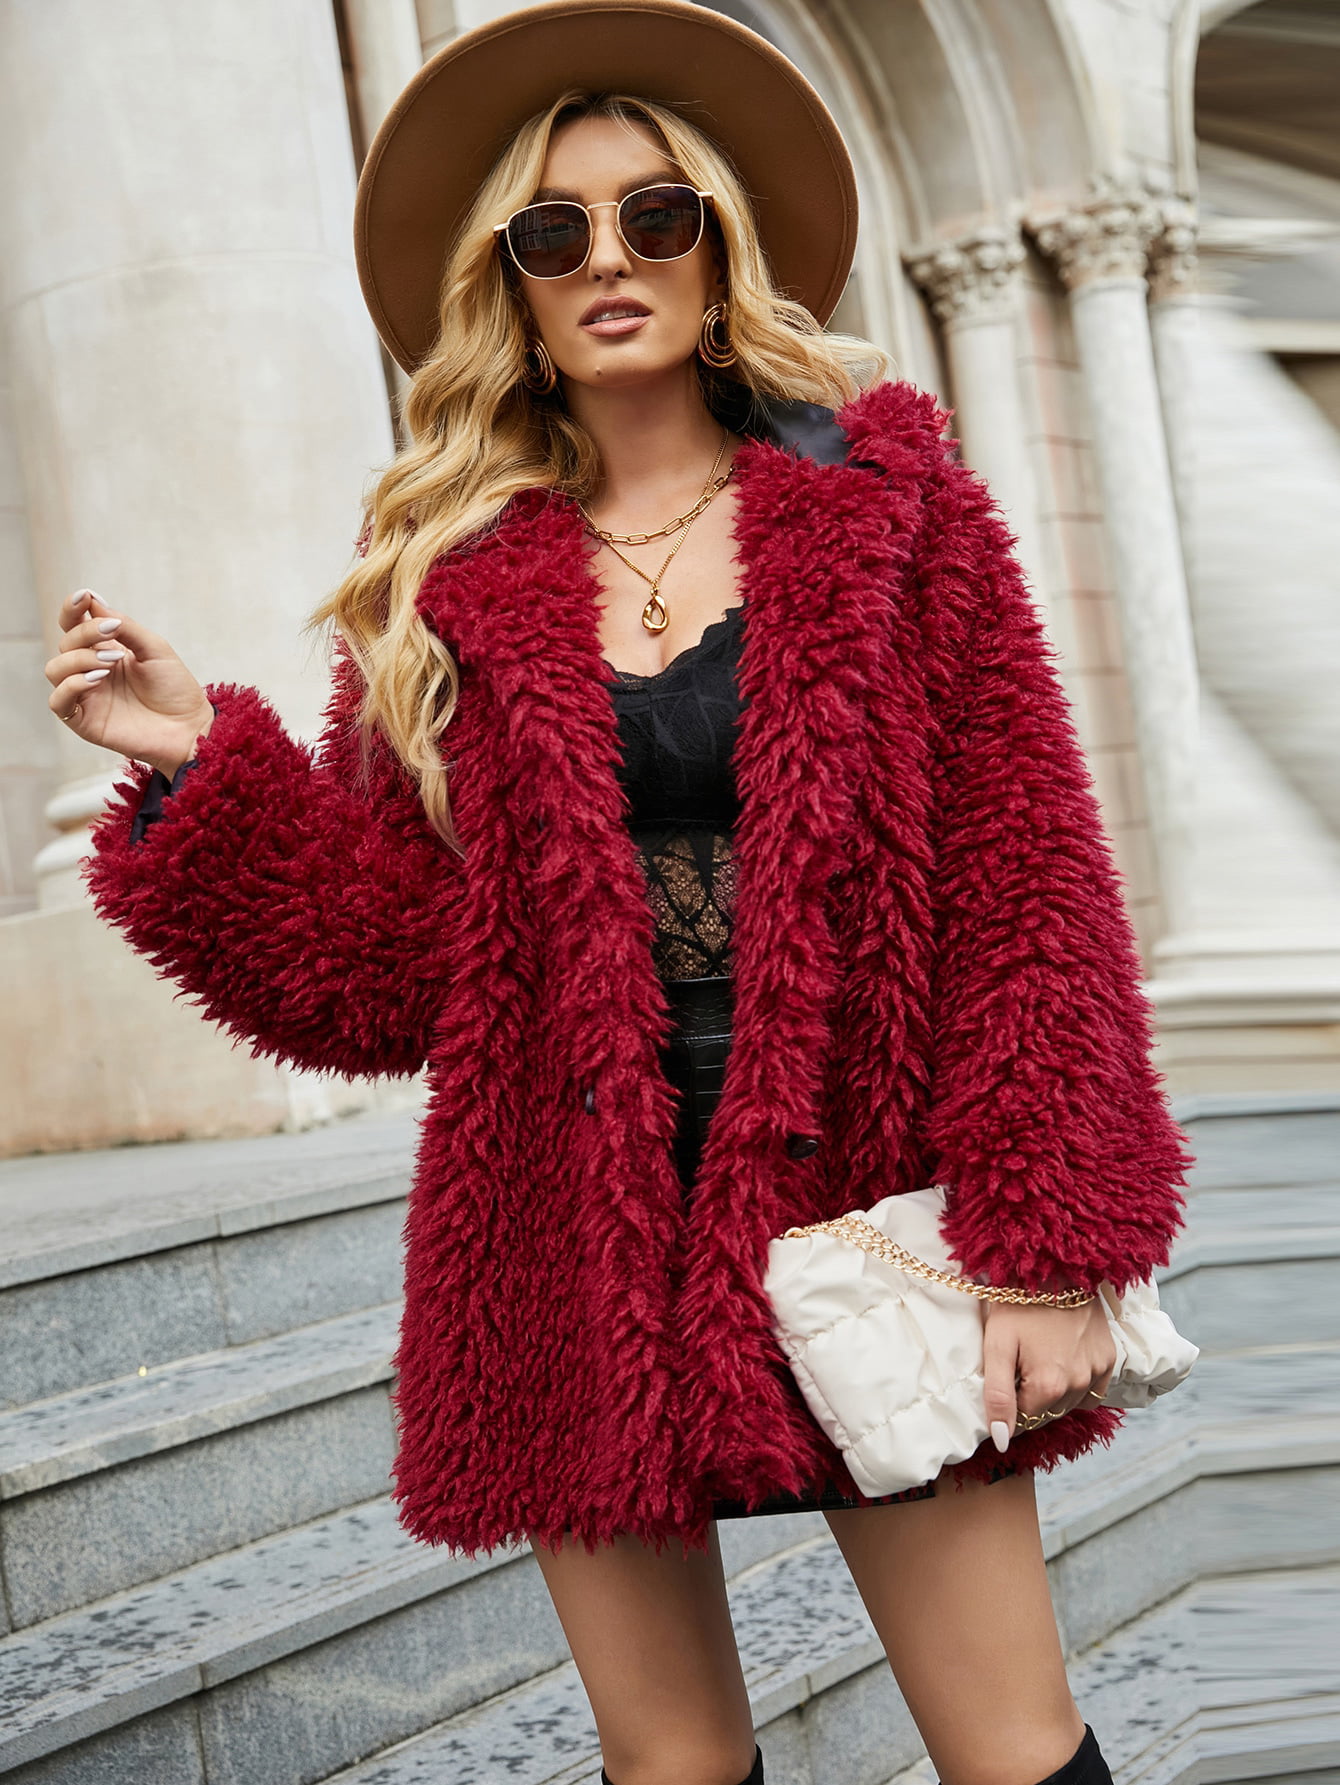 Choies Womens Reversible Faux Fur Winter Hooded Cardigan Coat Black/Beige/Burgundy 